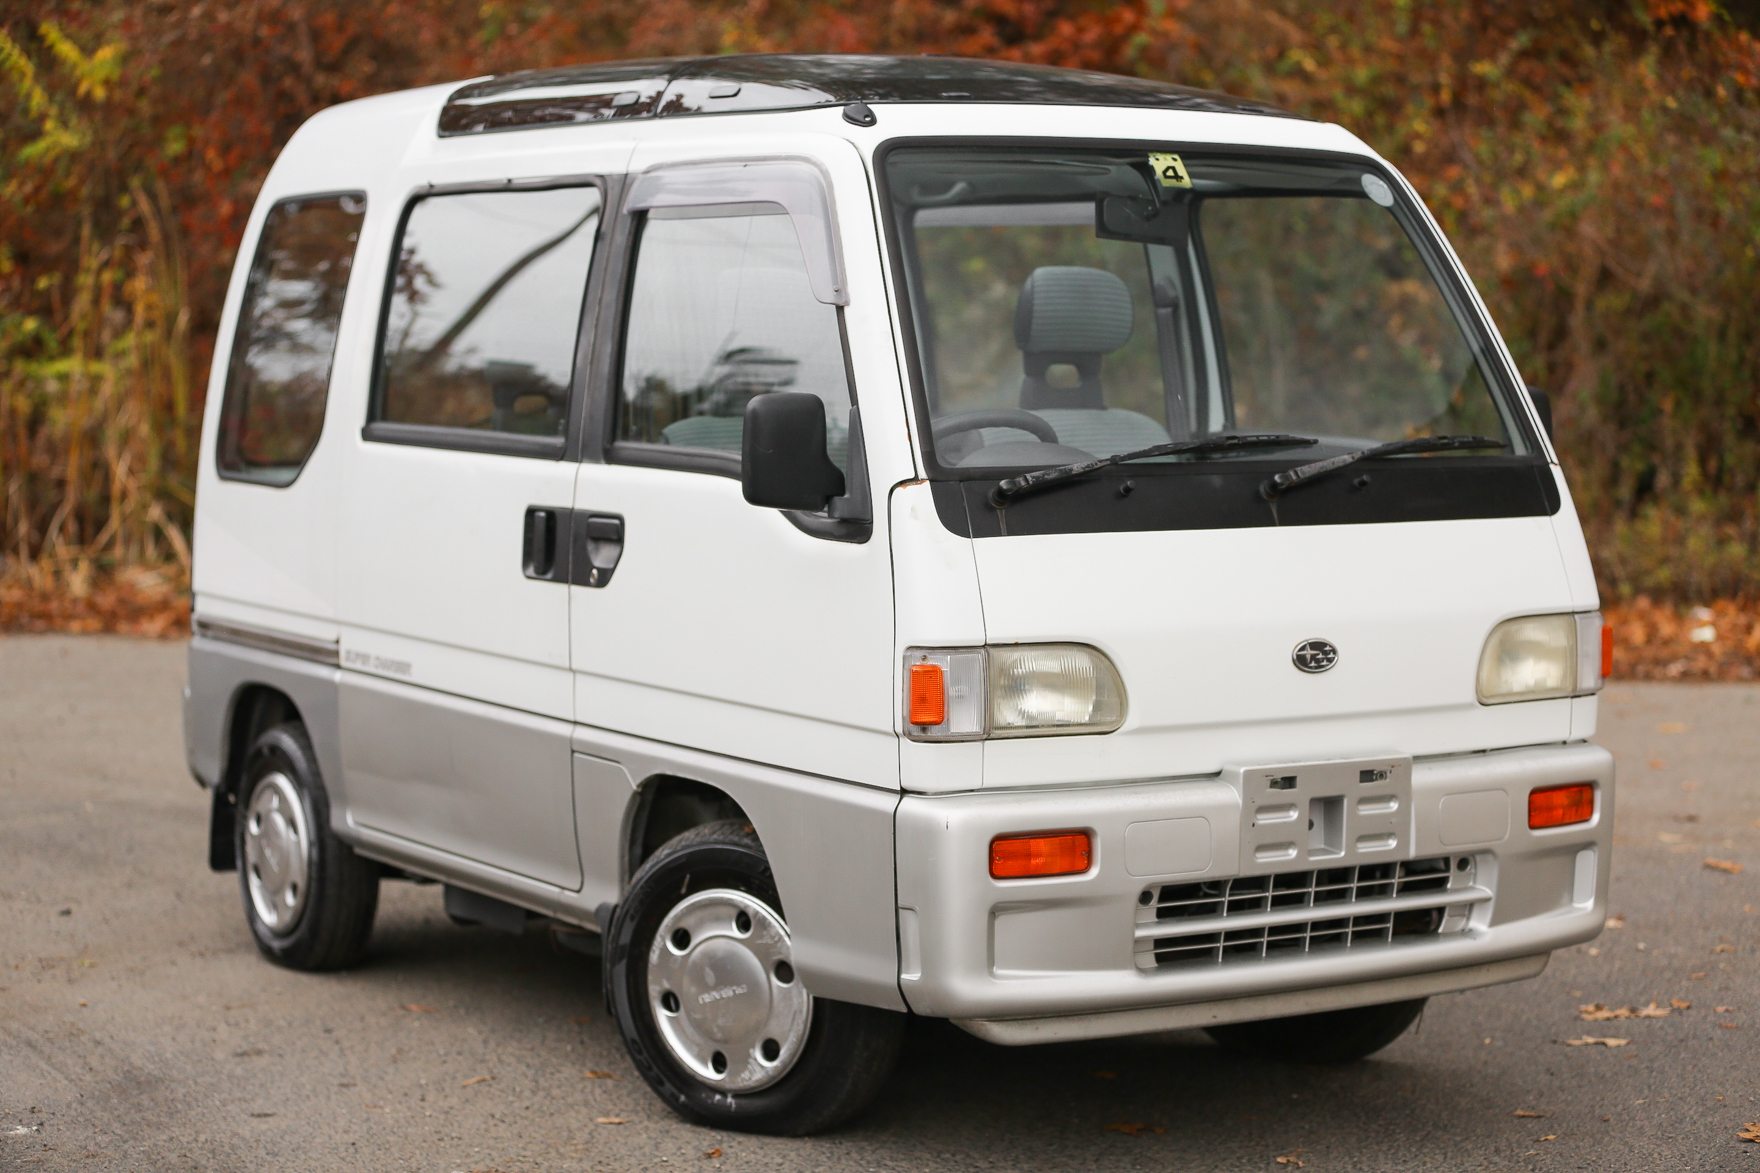 1991 Subaru Sambar Van Supercharger - $8,900